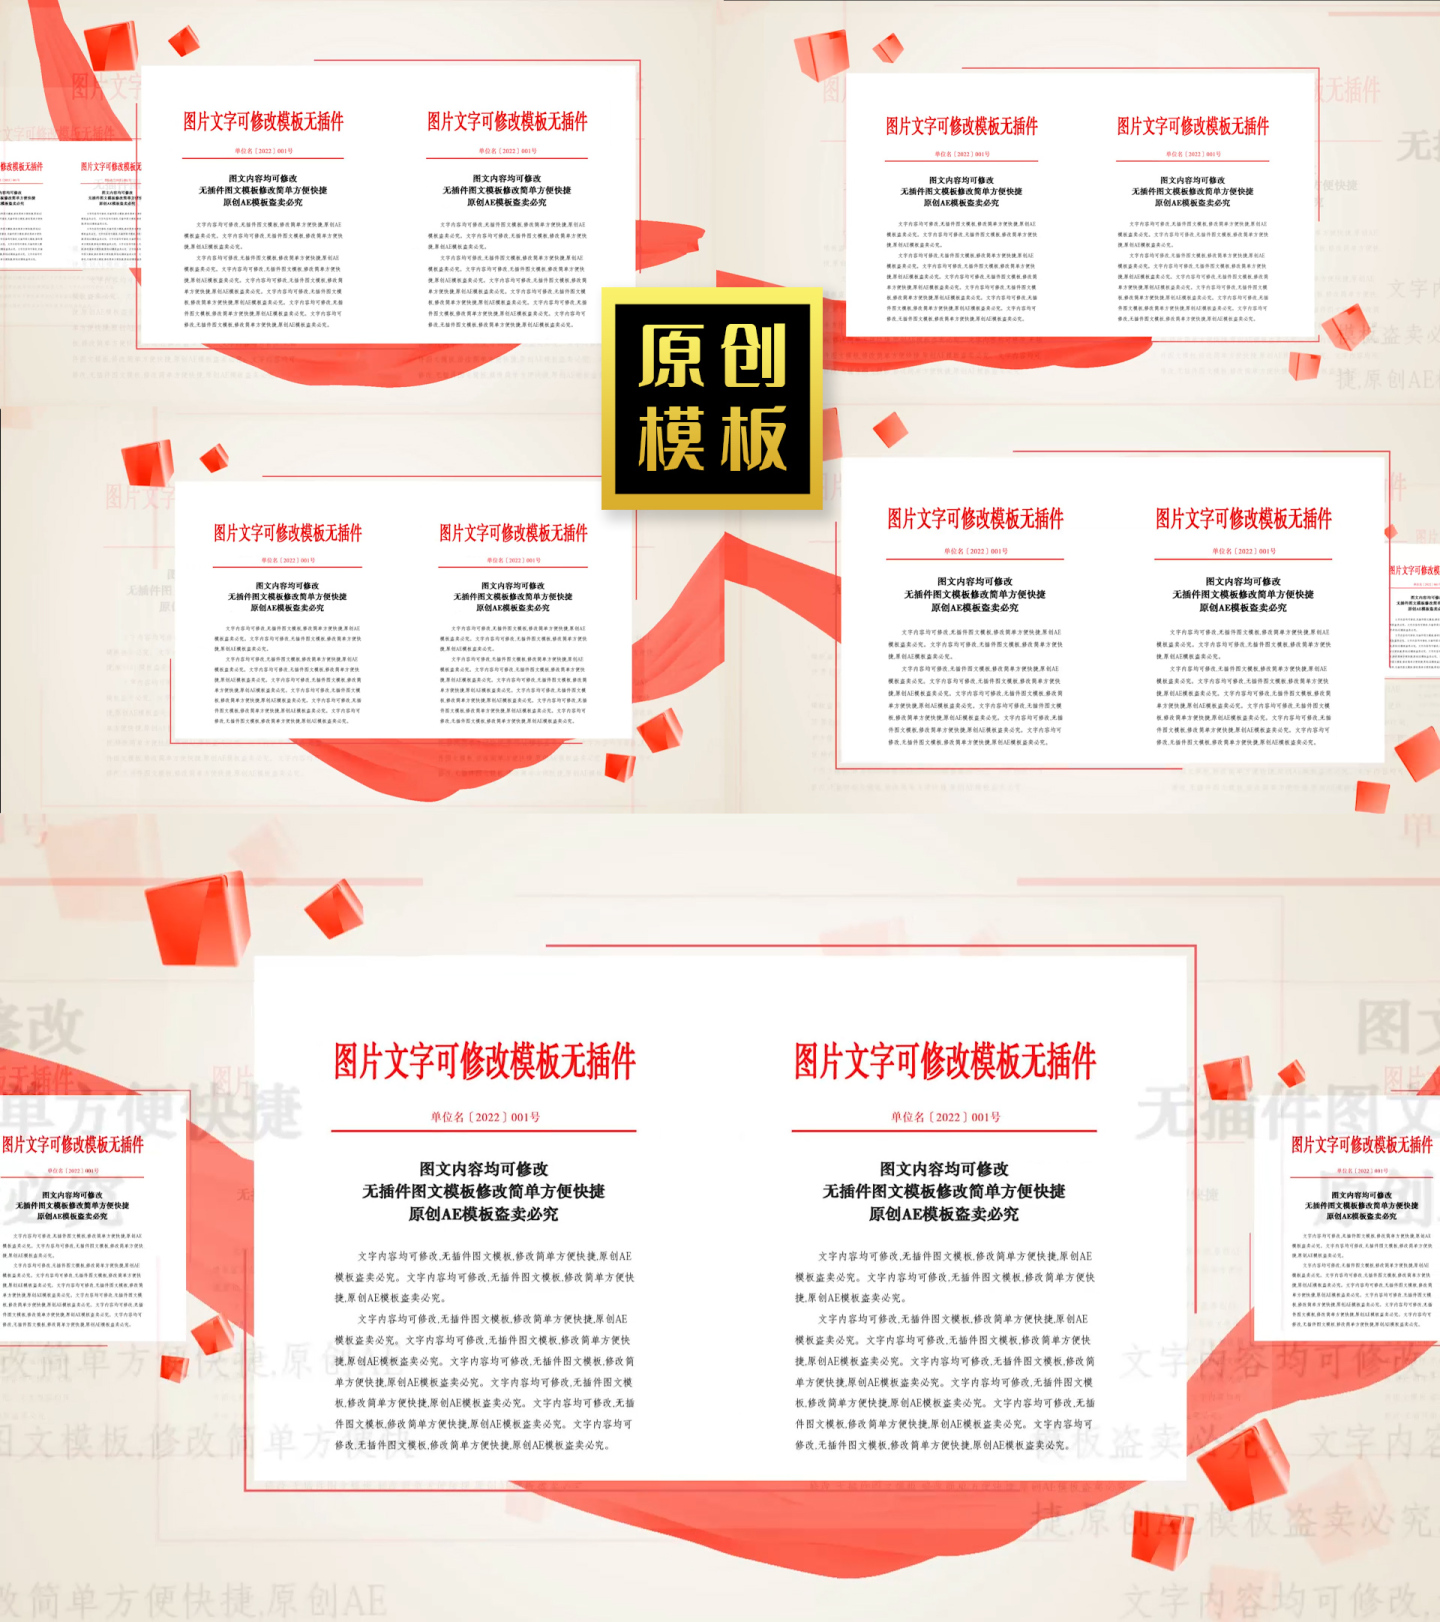 48图党企红头文件照片荣誉证书图片展示